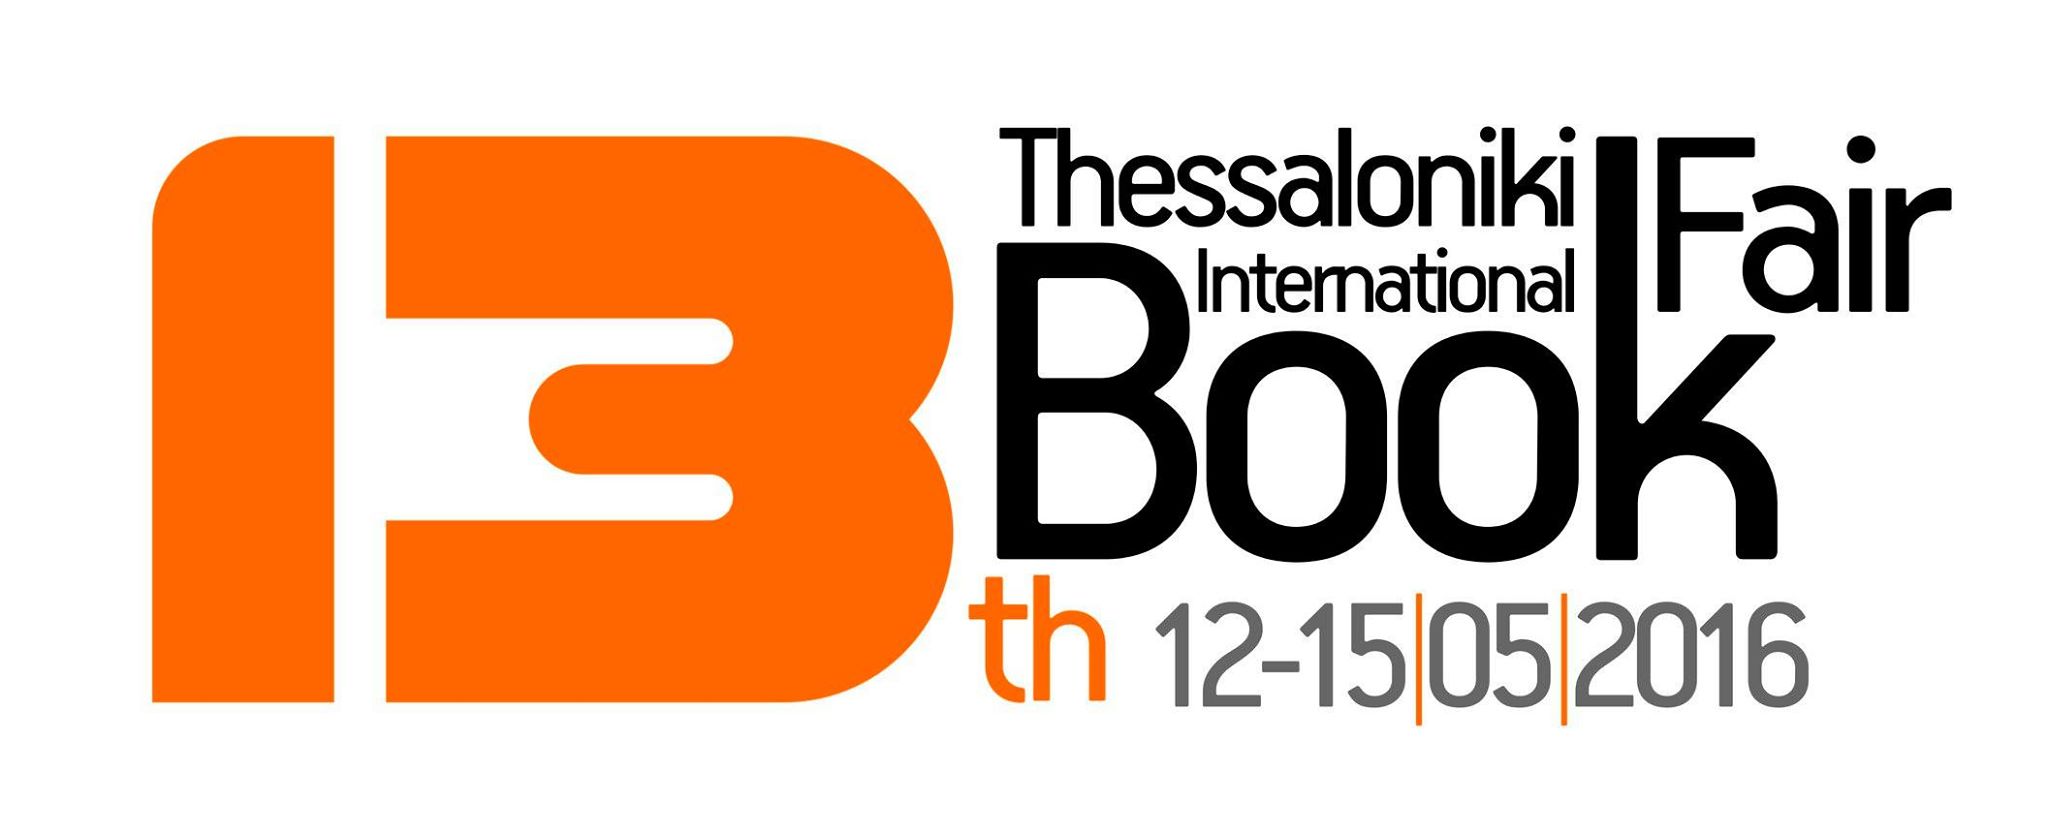 international book fair thessaloniki